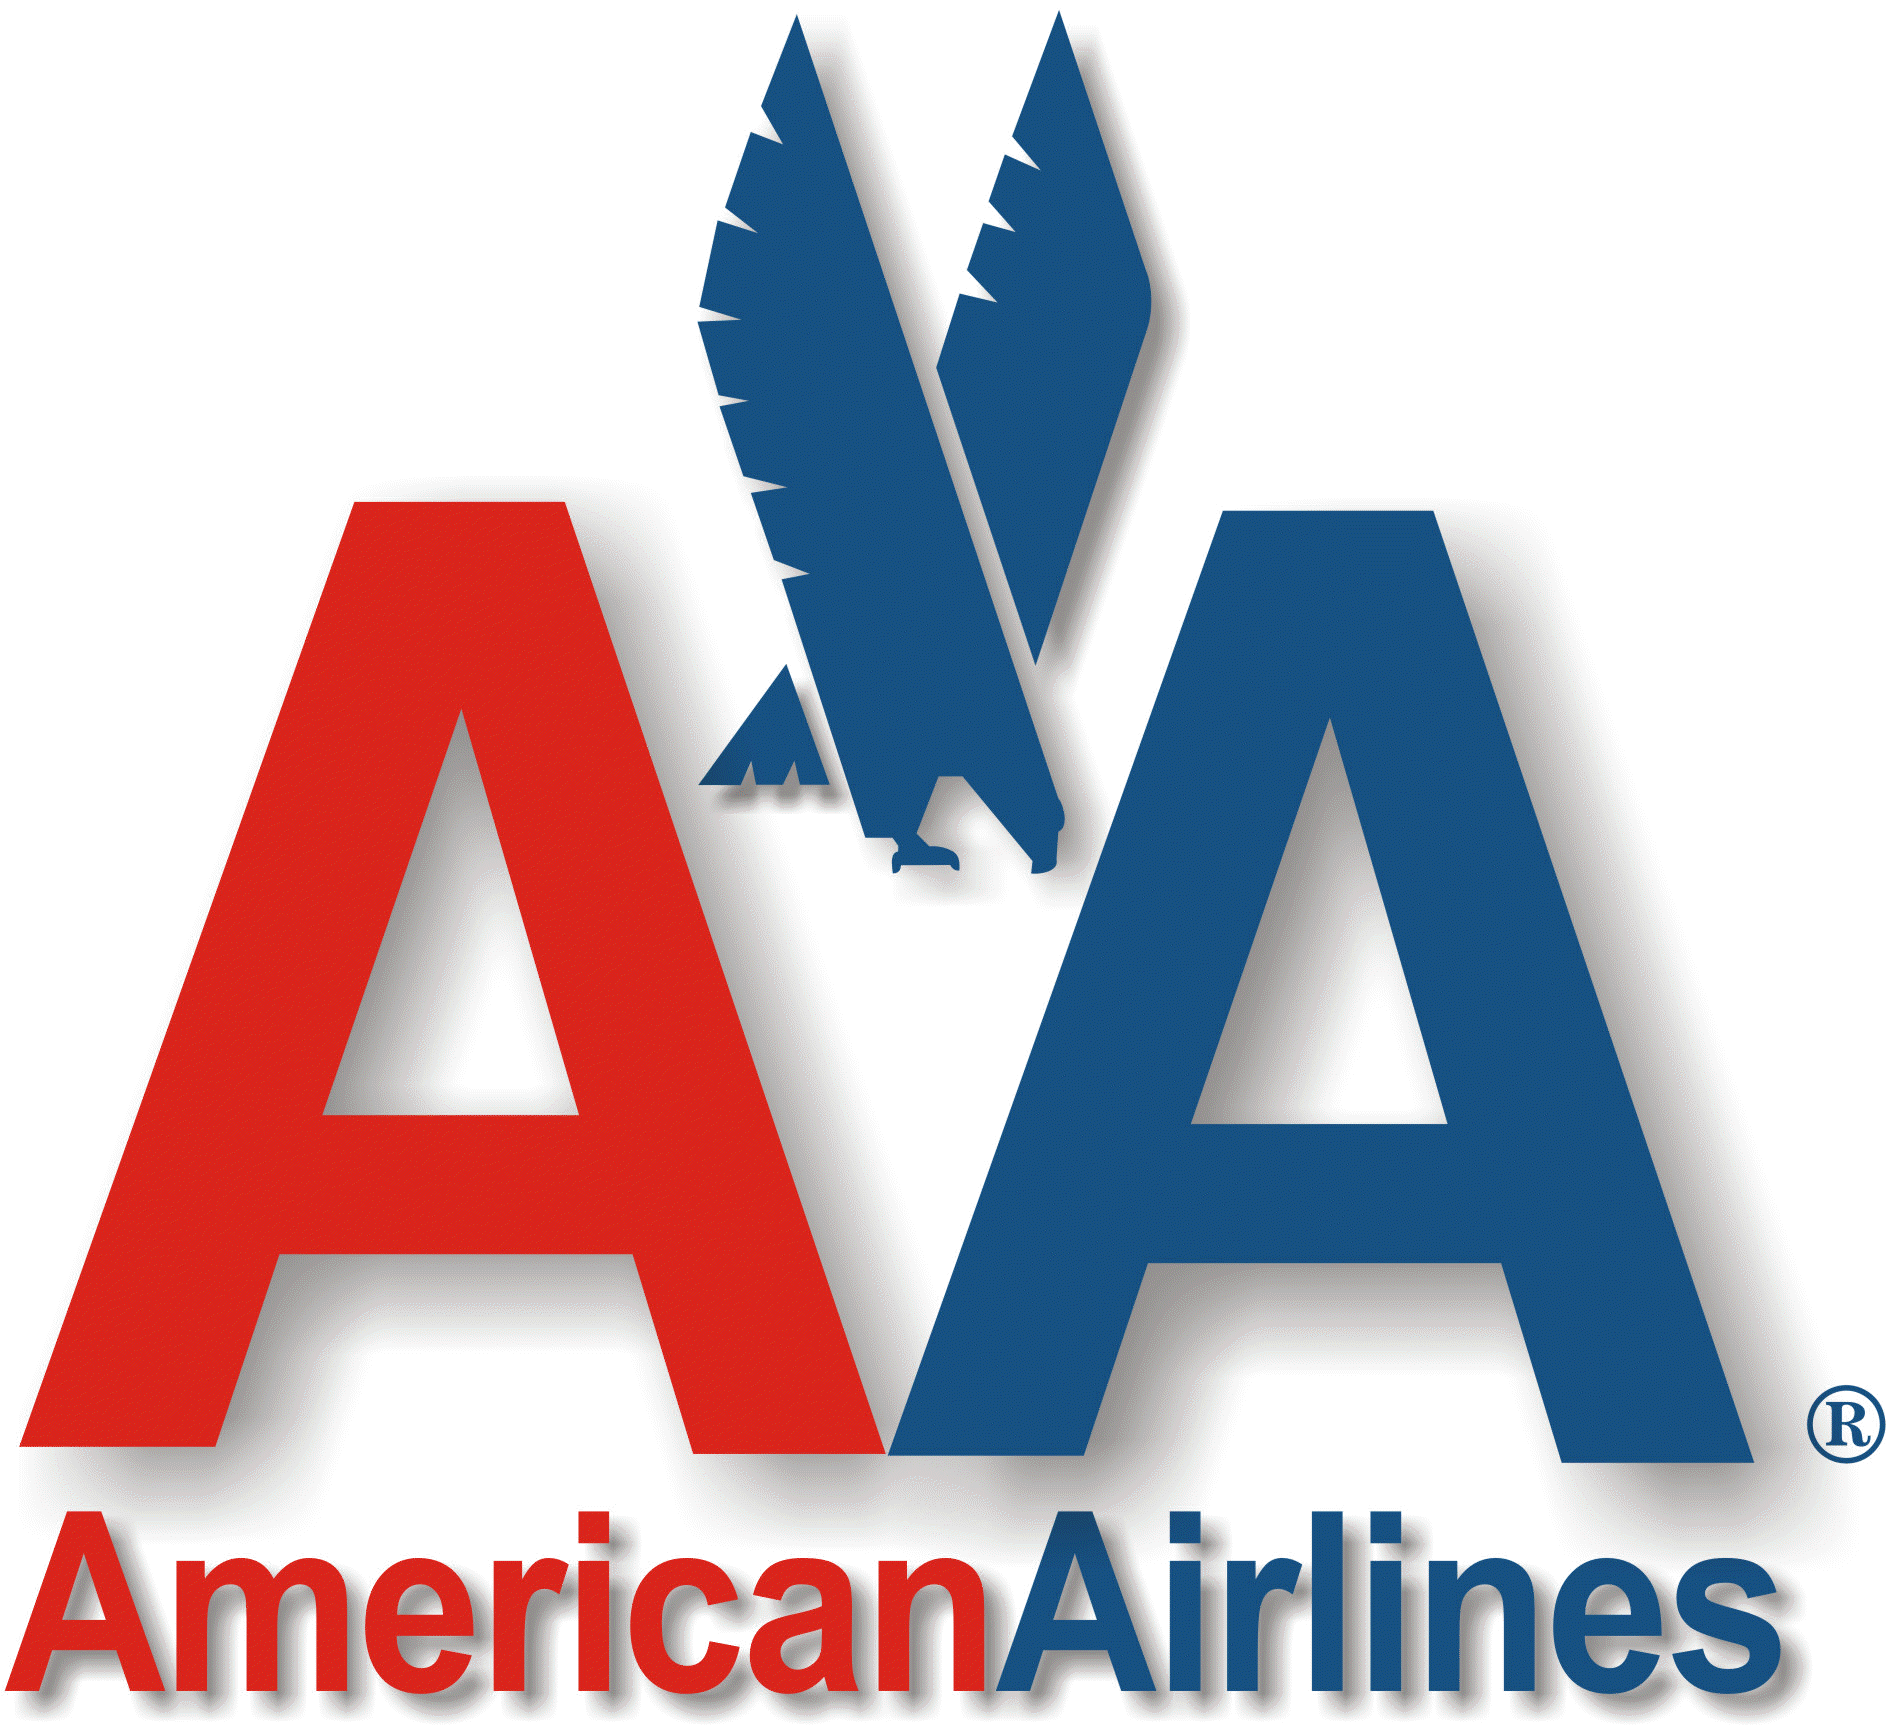 American Airlines et US Airways annoncent leur fusion pour devenir la première compagnie aérienne mondiale